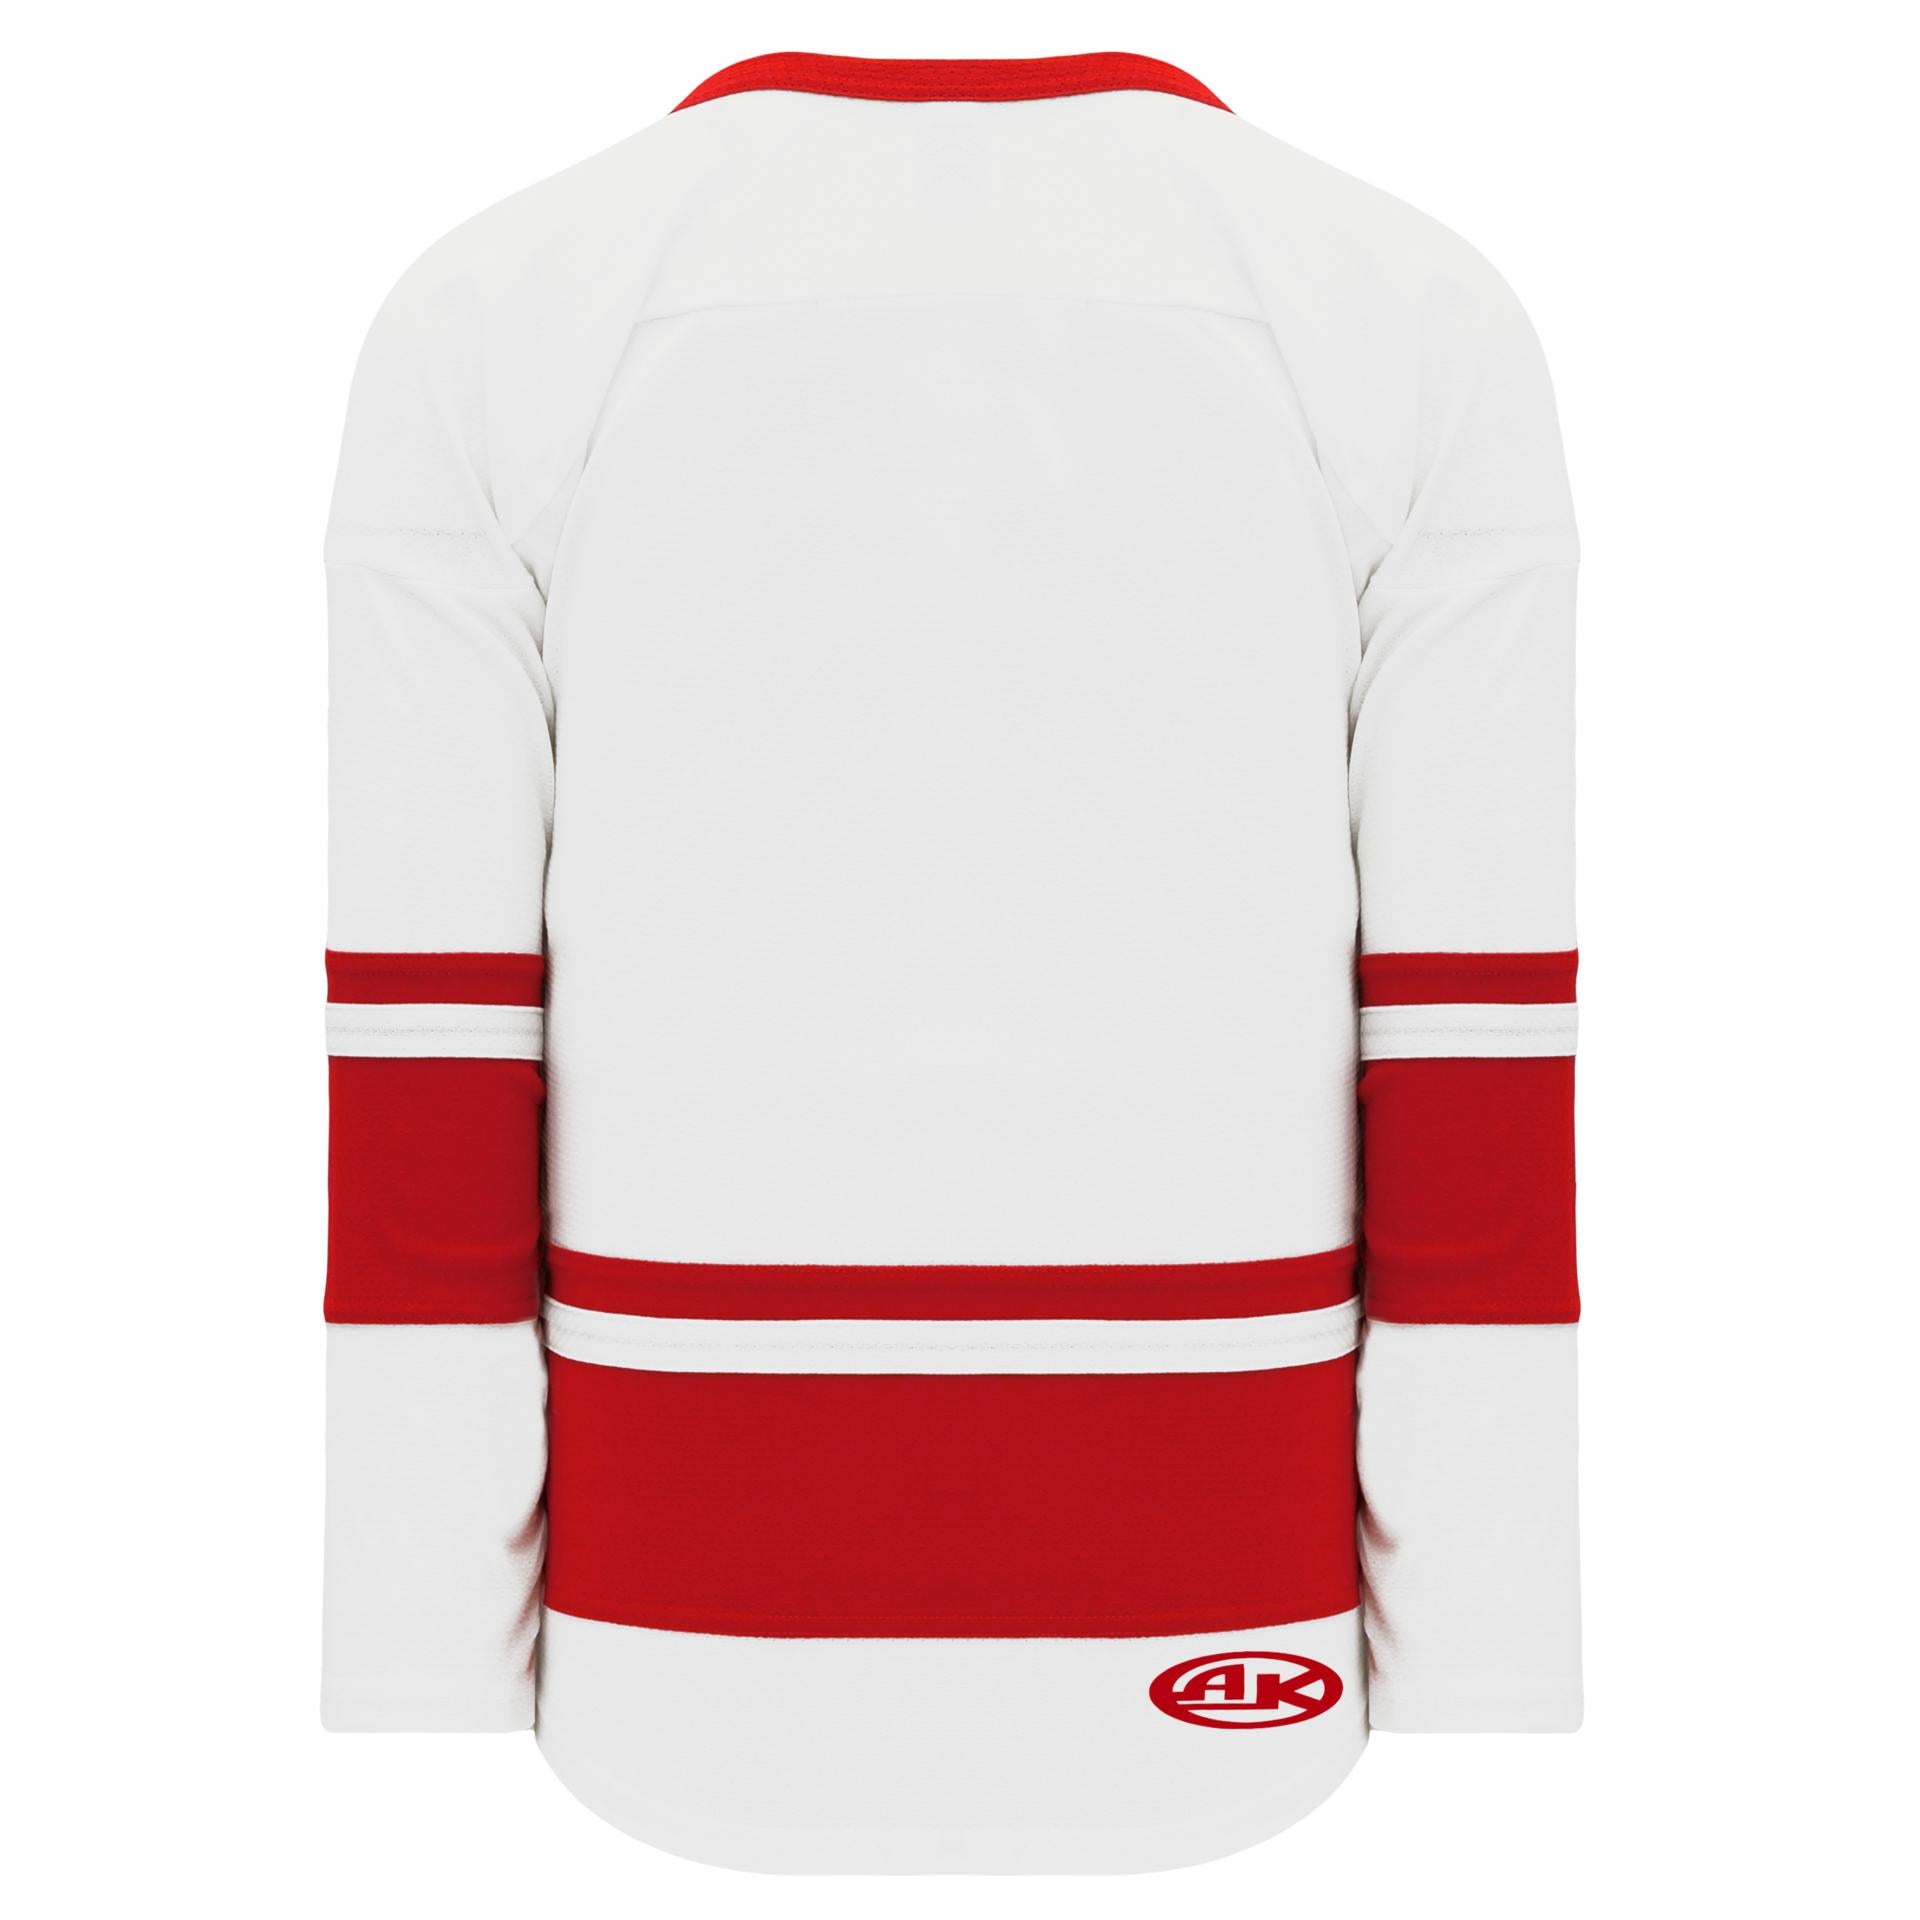 2020 NHL All-Star jersey : r/hockeyjerseys